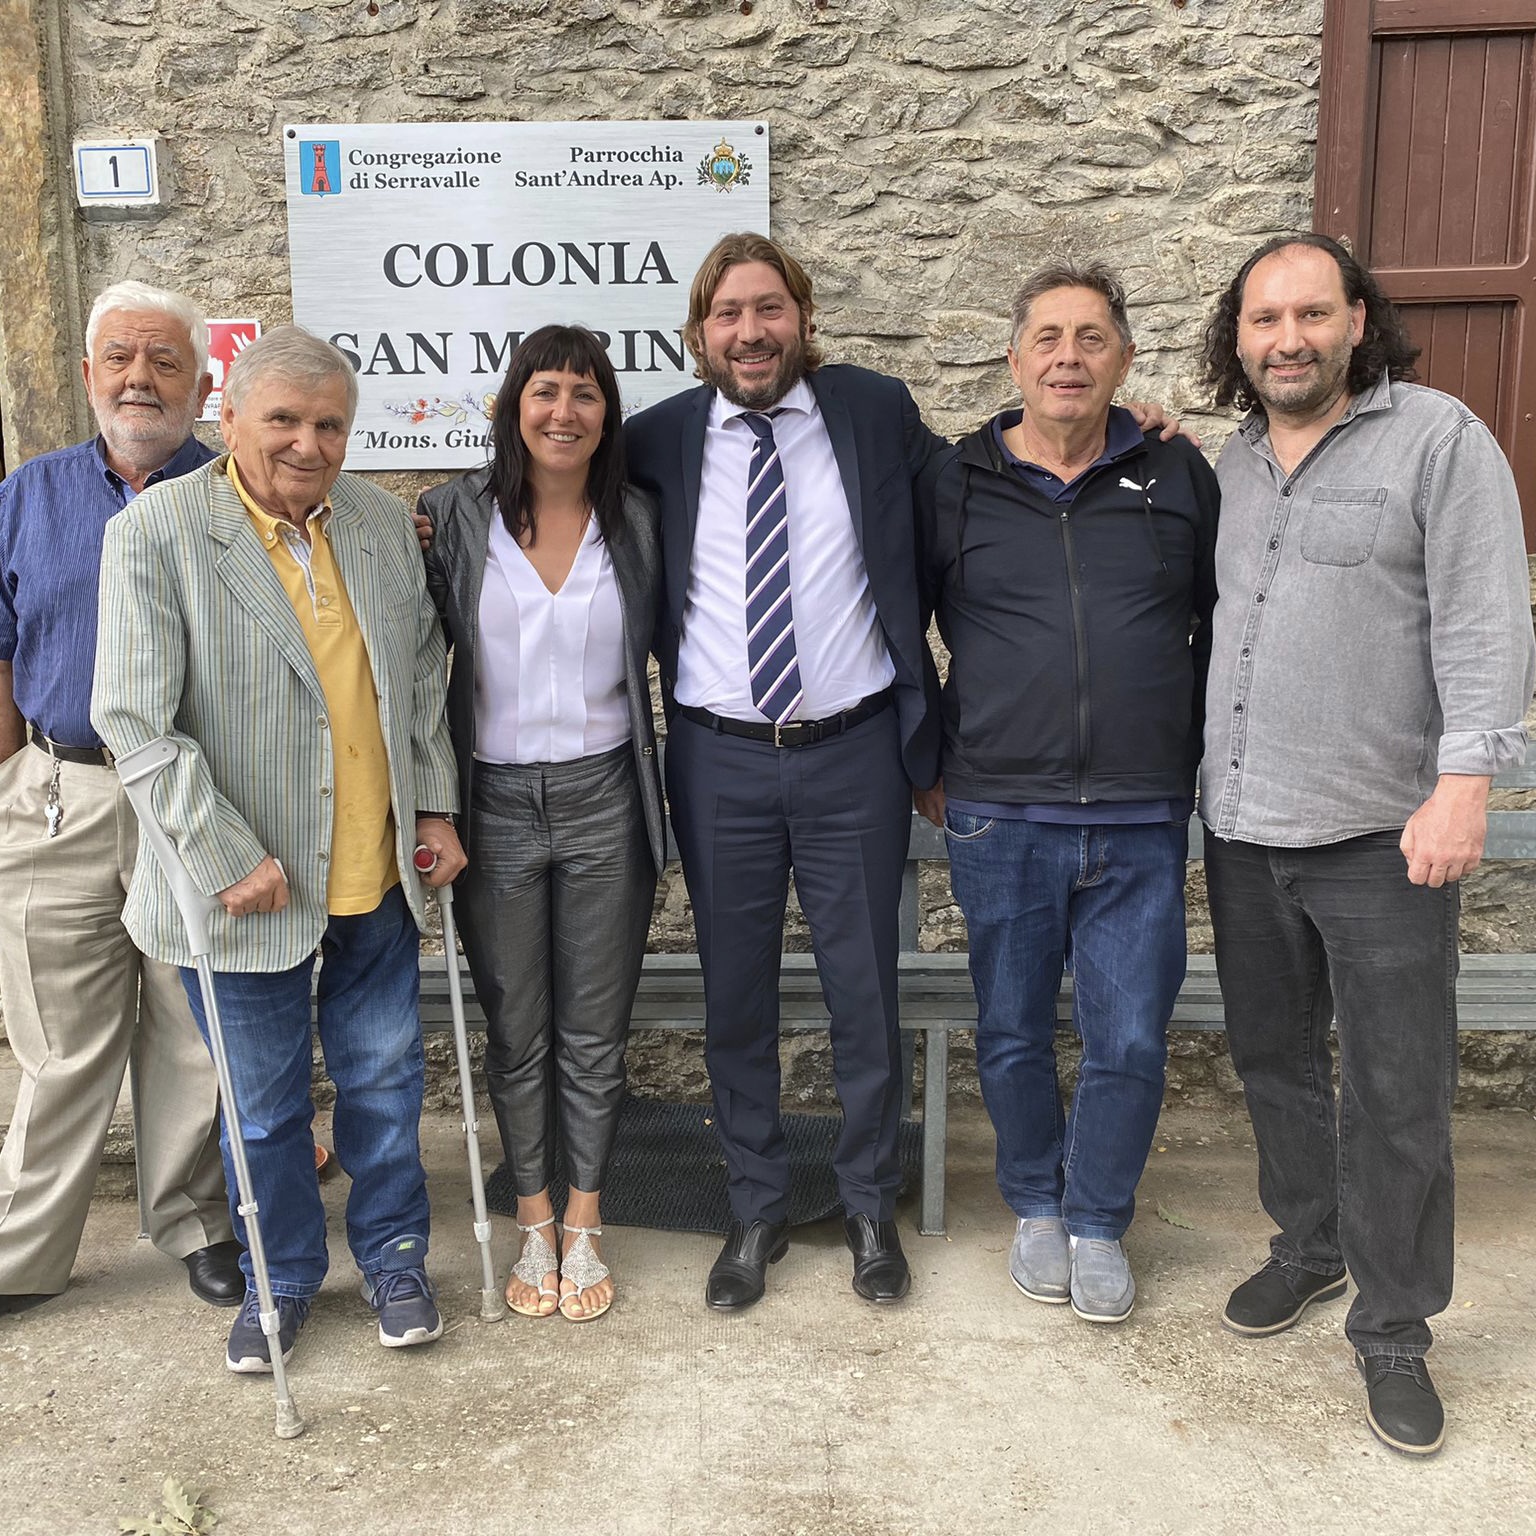 San Marino.Il Segretario di Stato Pedini Amati a La Verna con la Congregazione di Serravalle e l’Associazione Granello di Senape